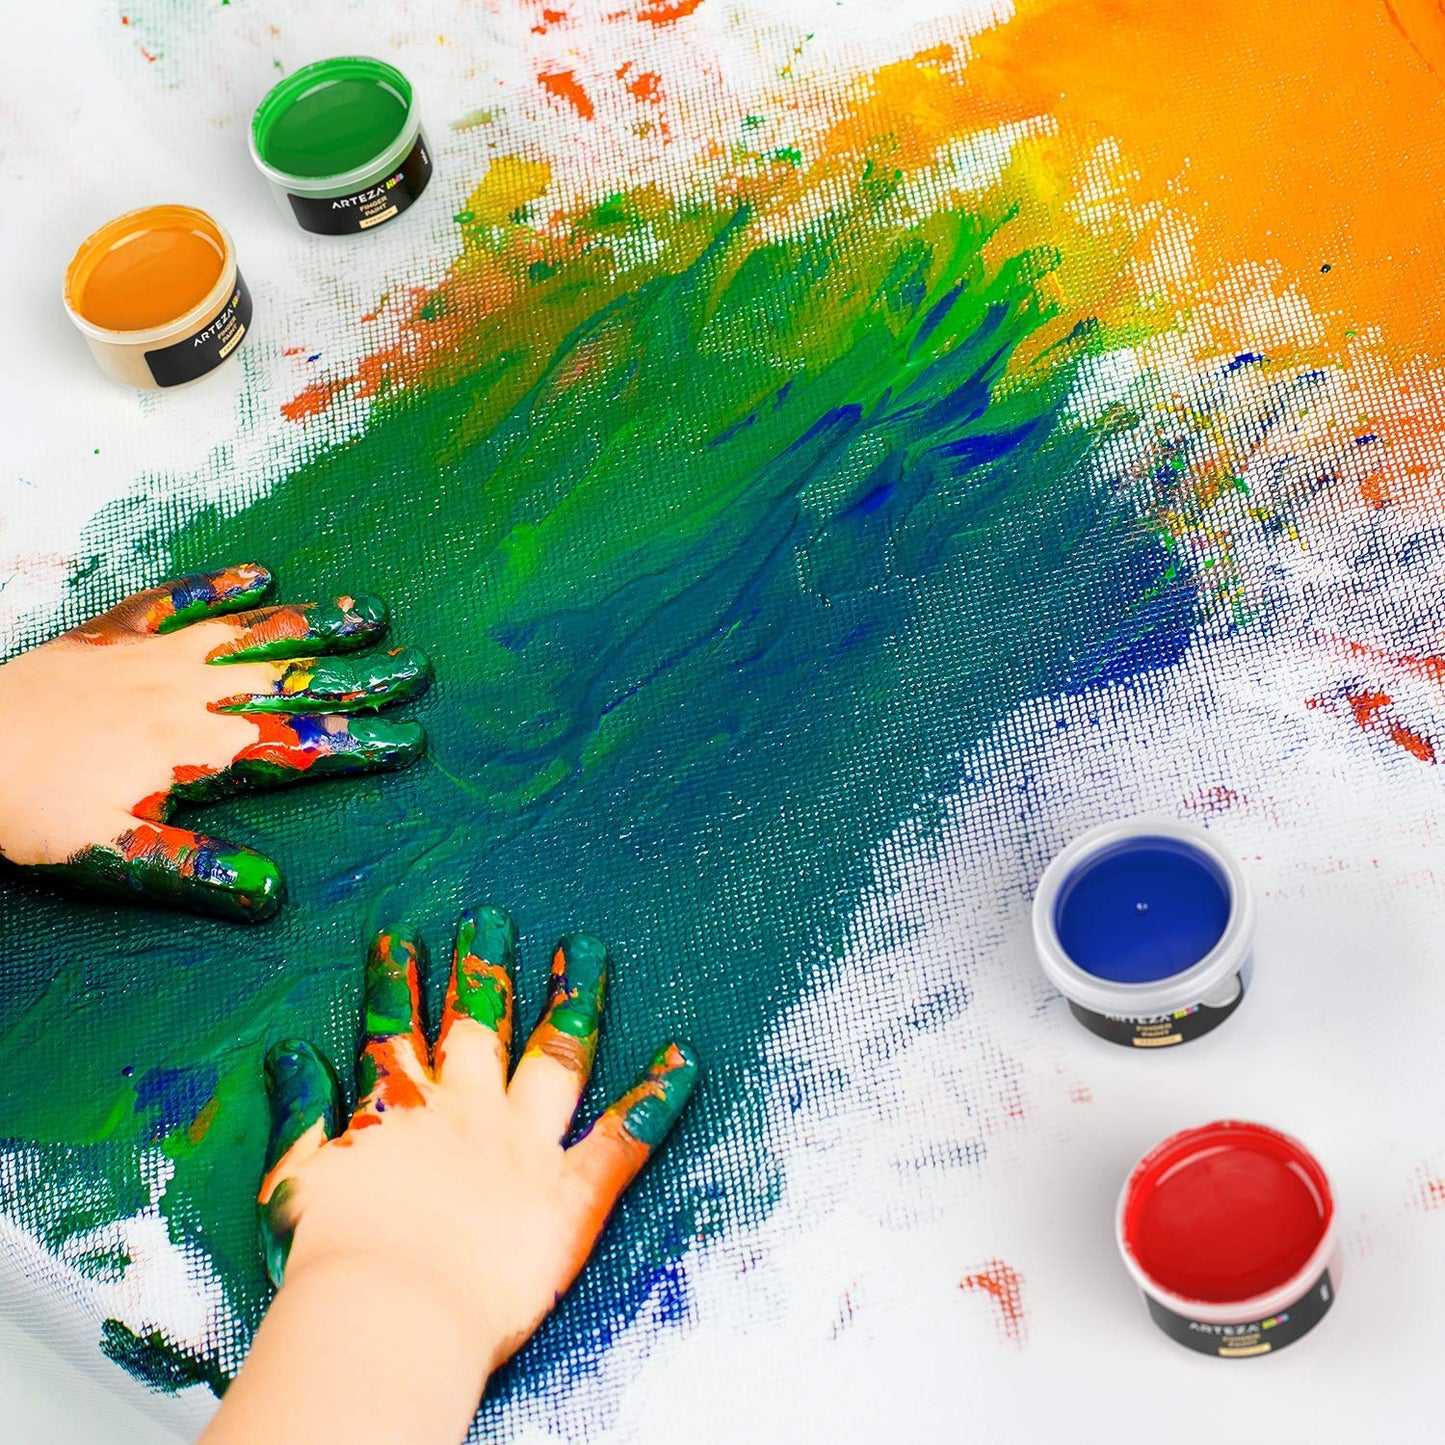 Arteza Kids Finger Paints, Assorted Colors, 30ml - Set of 30